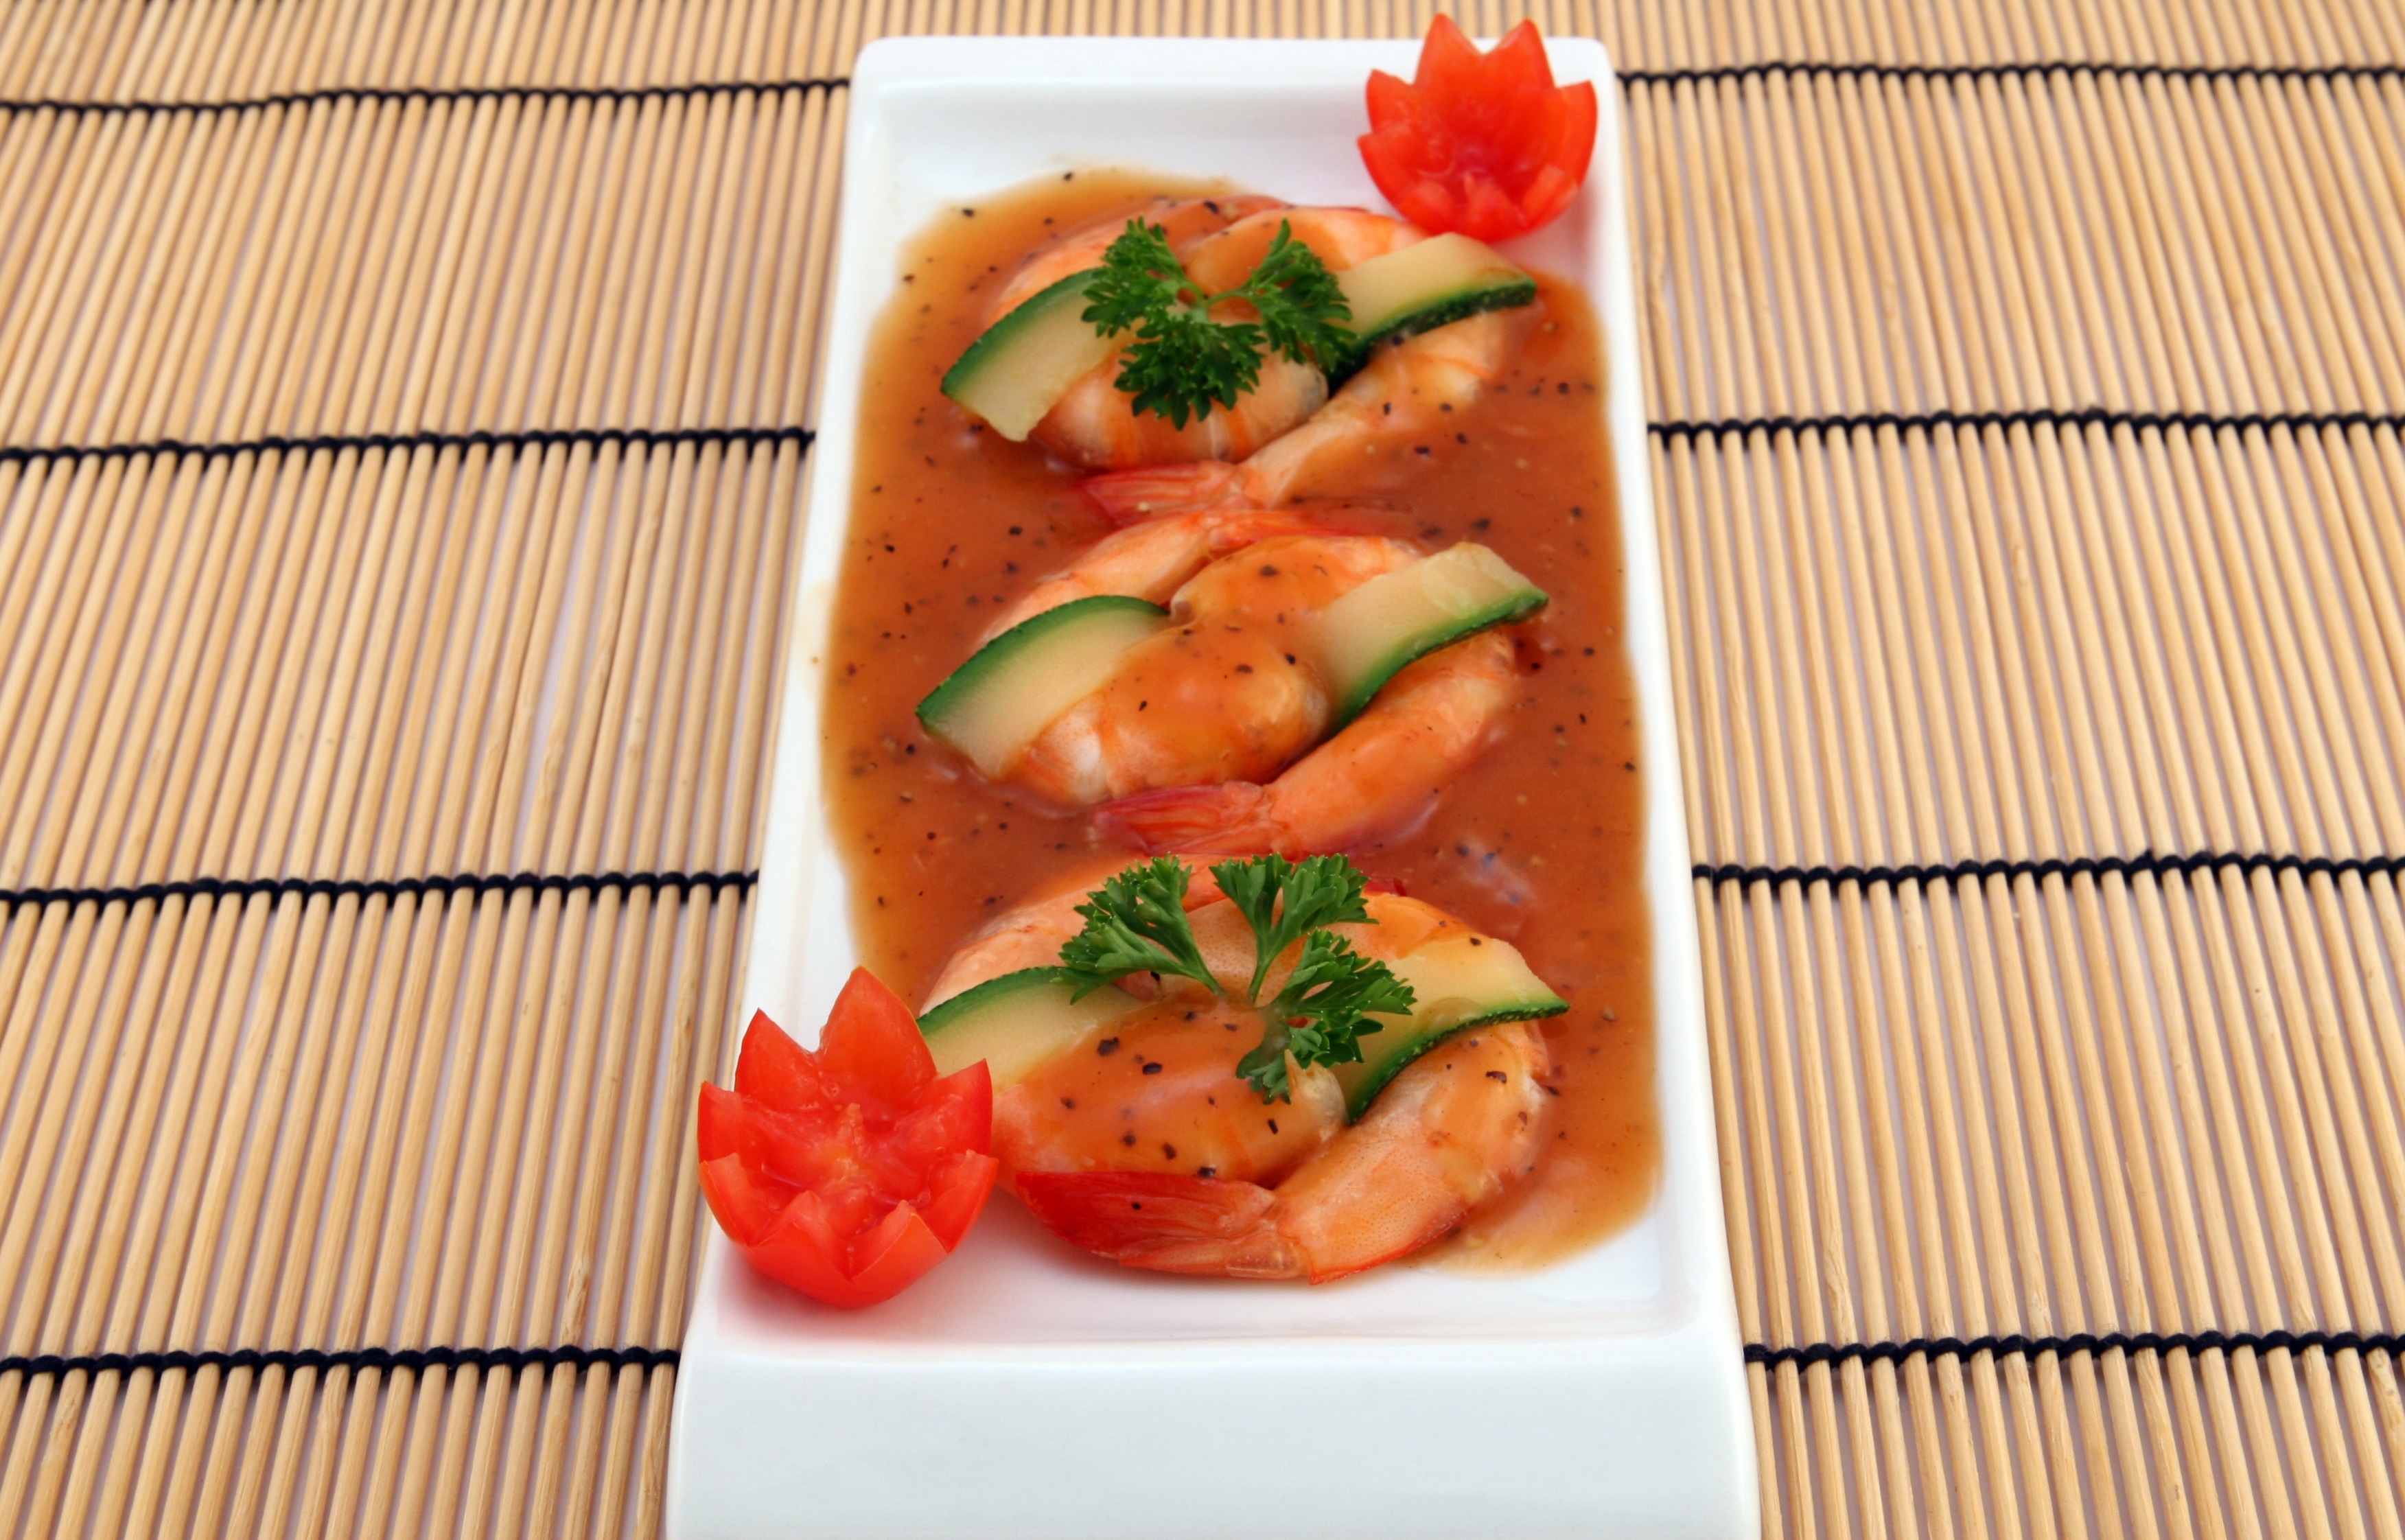 shrimp with sauce dish